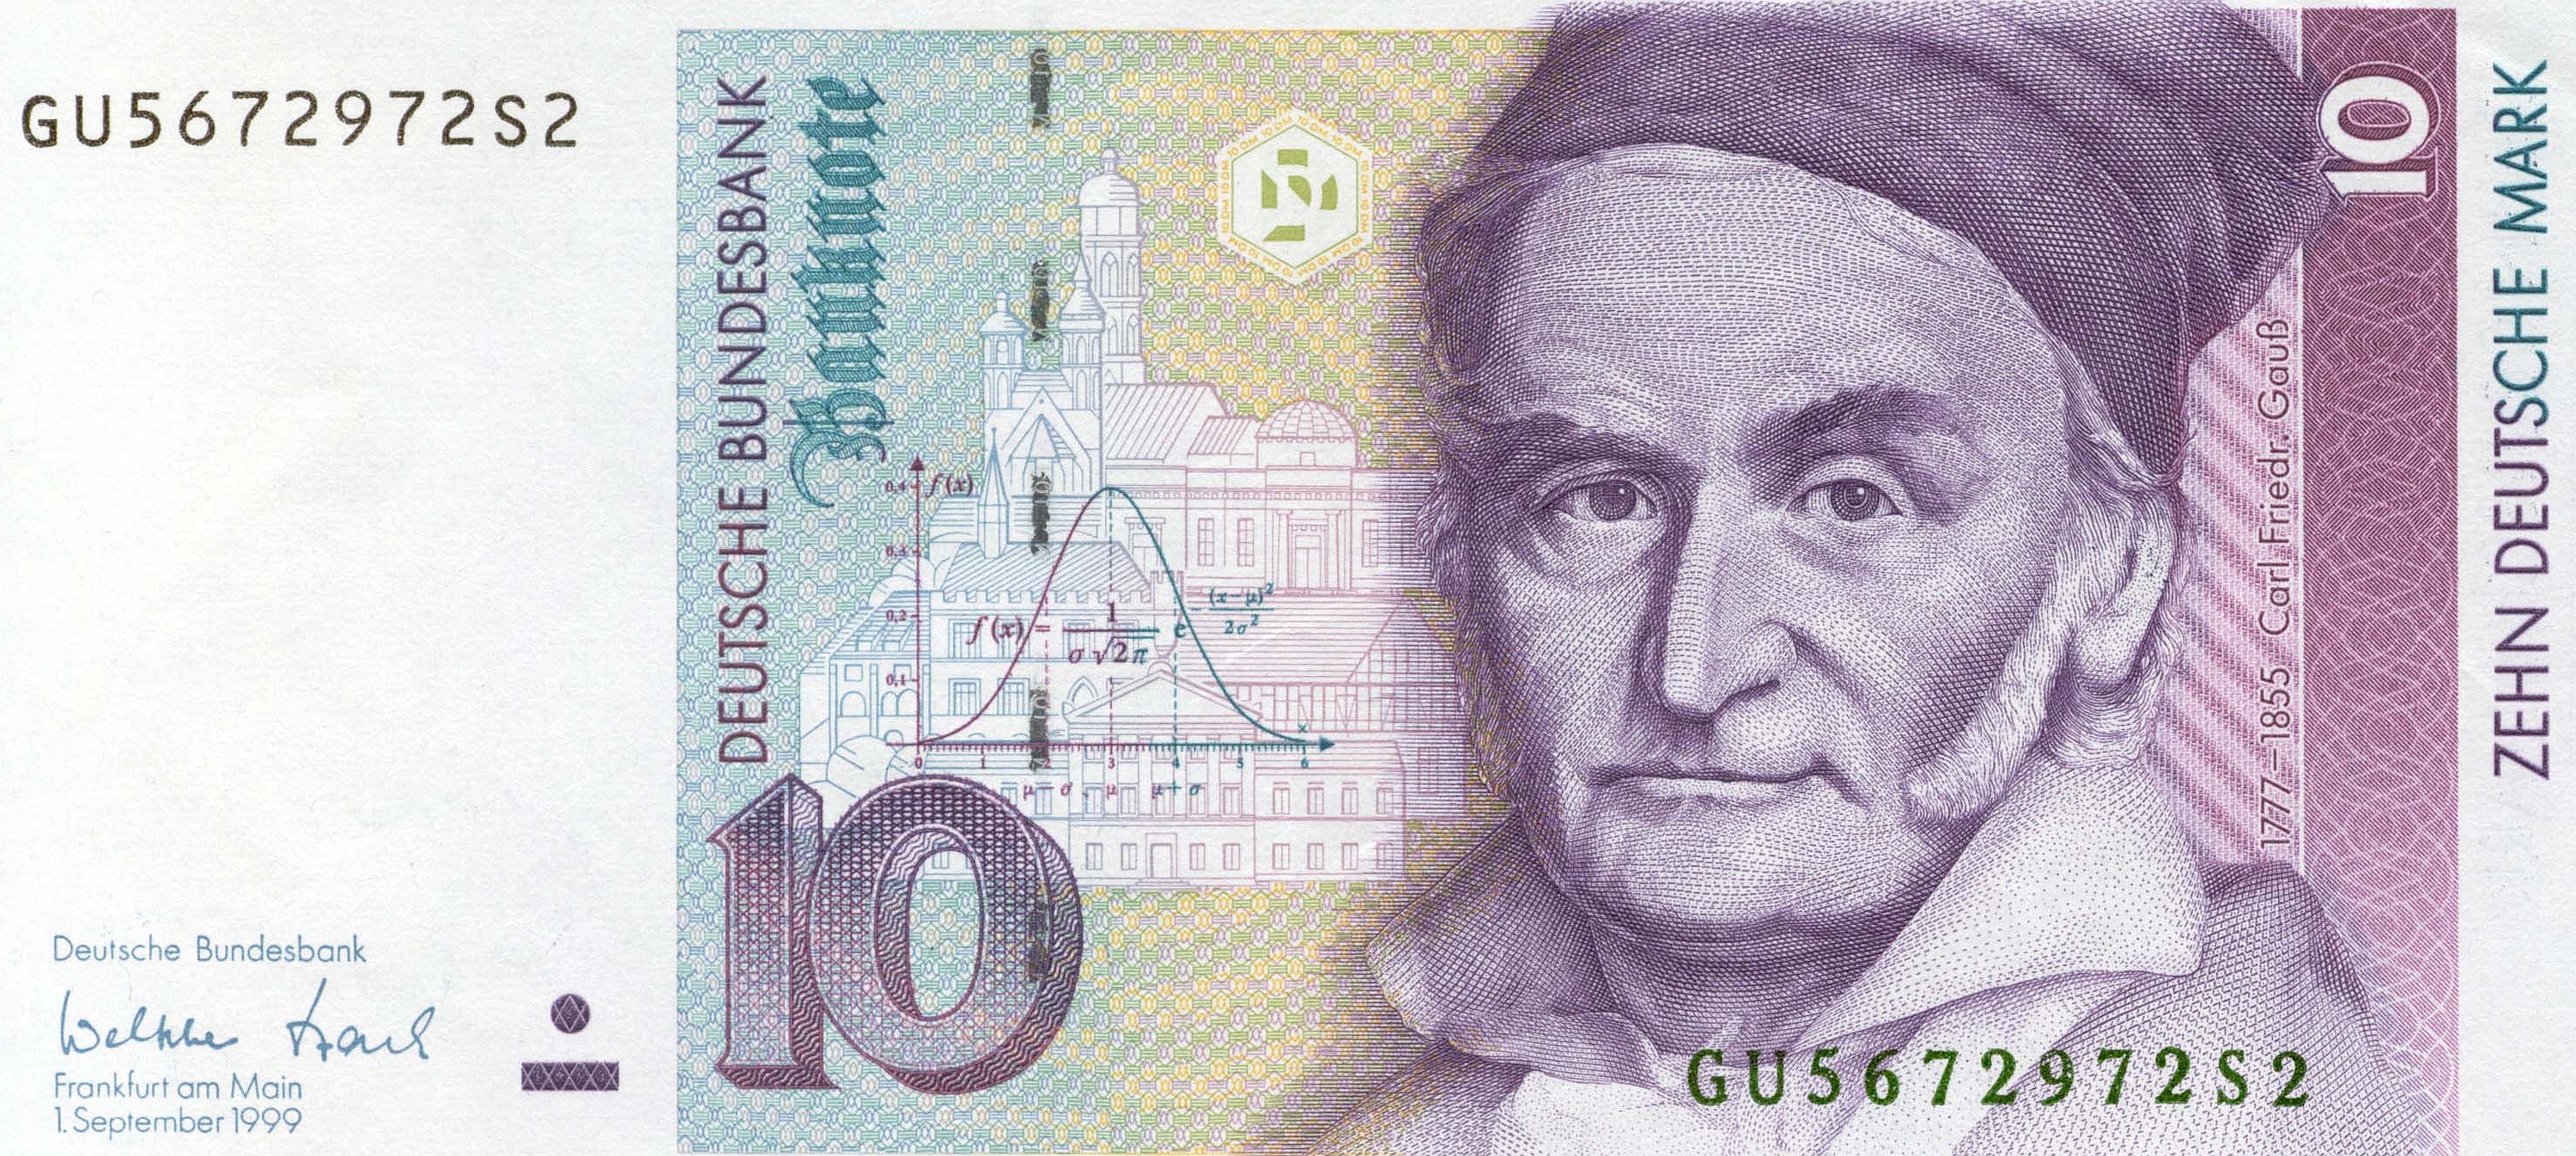 Handy-Wallpaper Deutsche Mark, Währungen, Menschengemacht kostenlos herunterladen.